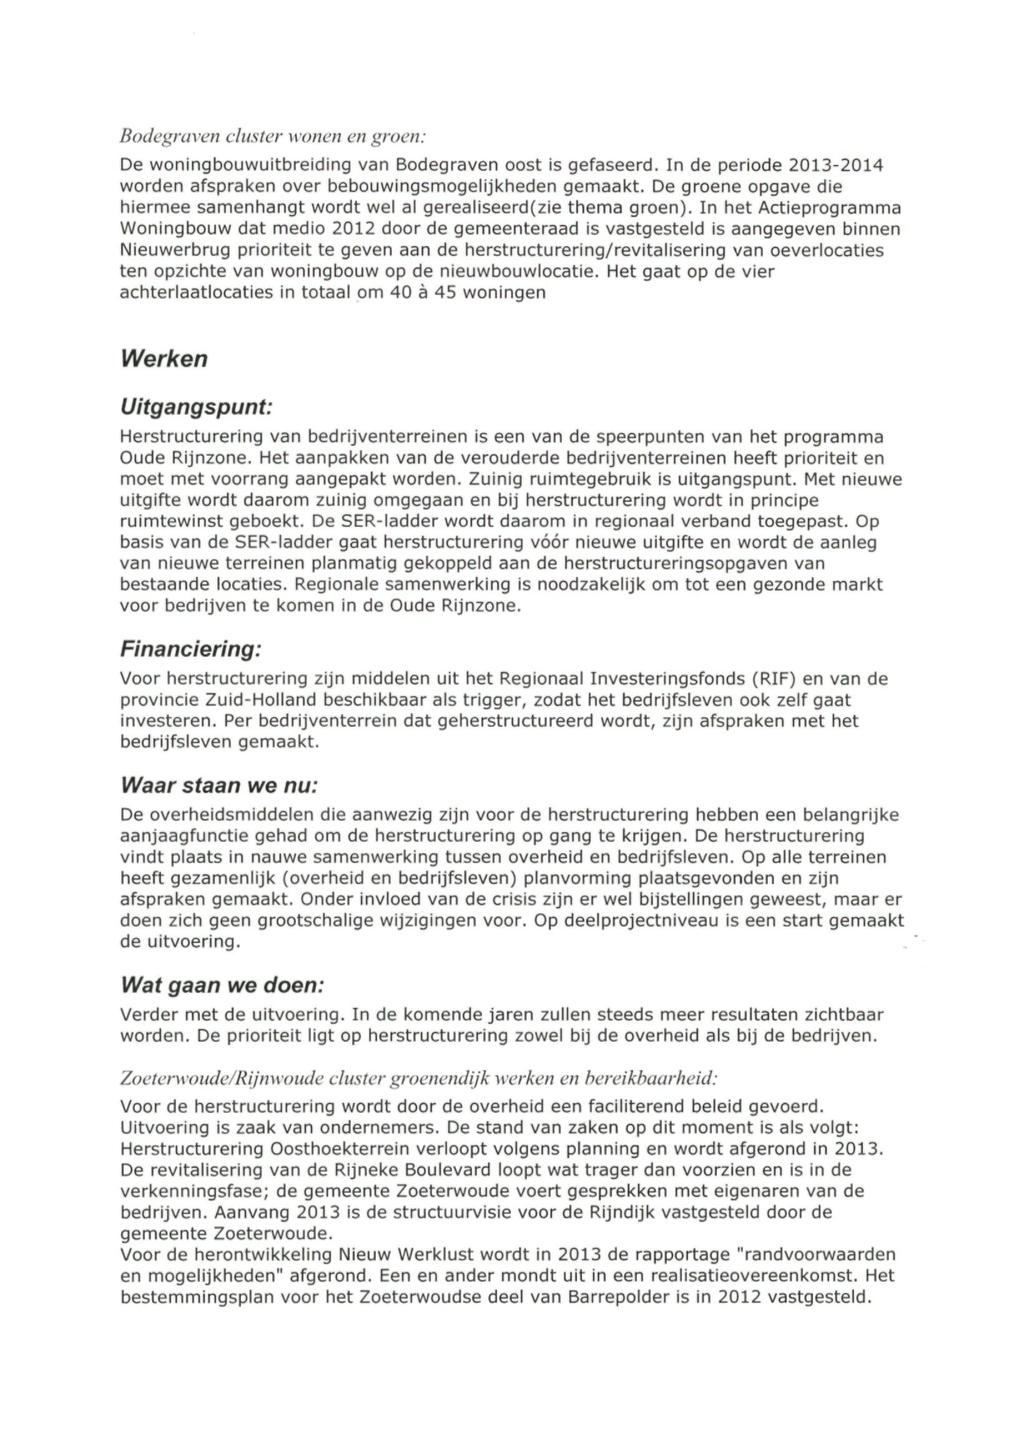 Bodegraven cluster wonen en groen: De woningbouwuitbreiding van Bodegraven oost is gefaseerd. In de periode 2013-2014 worden afspraken over bebouwingsmogelijkheden gemaakt.